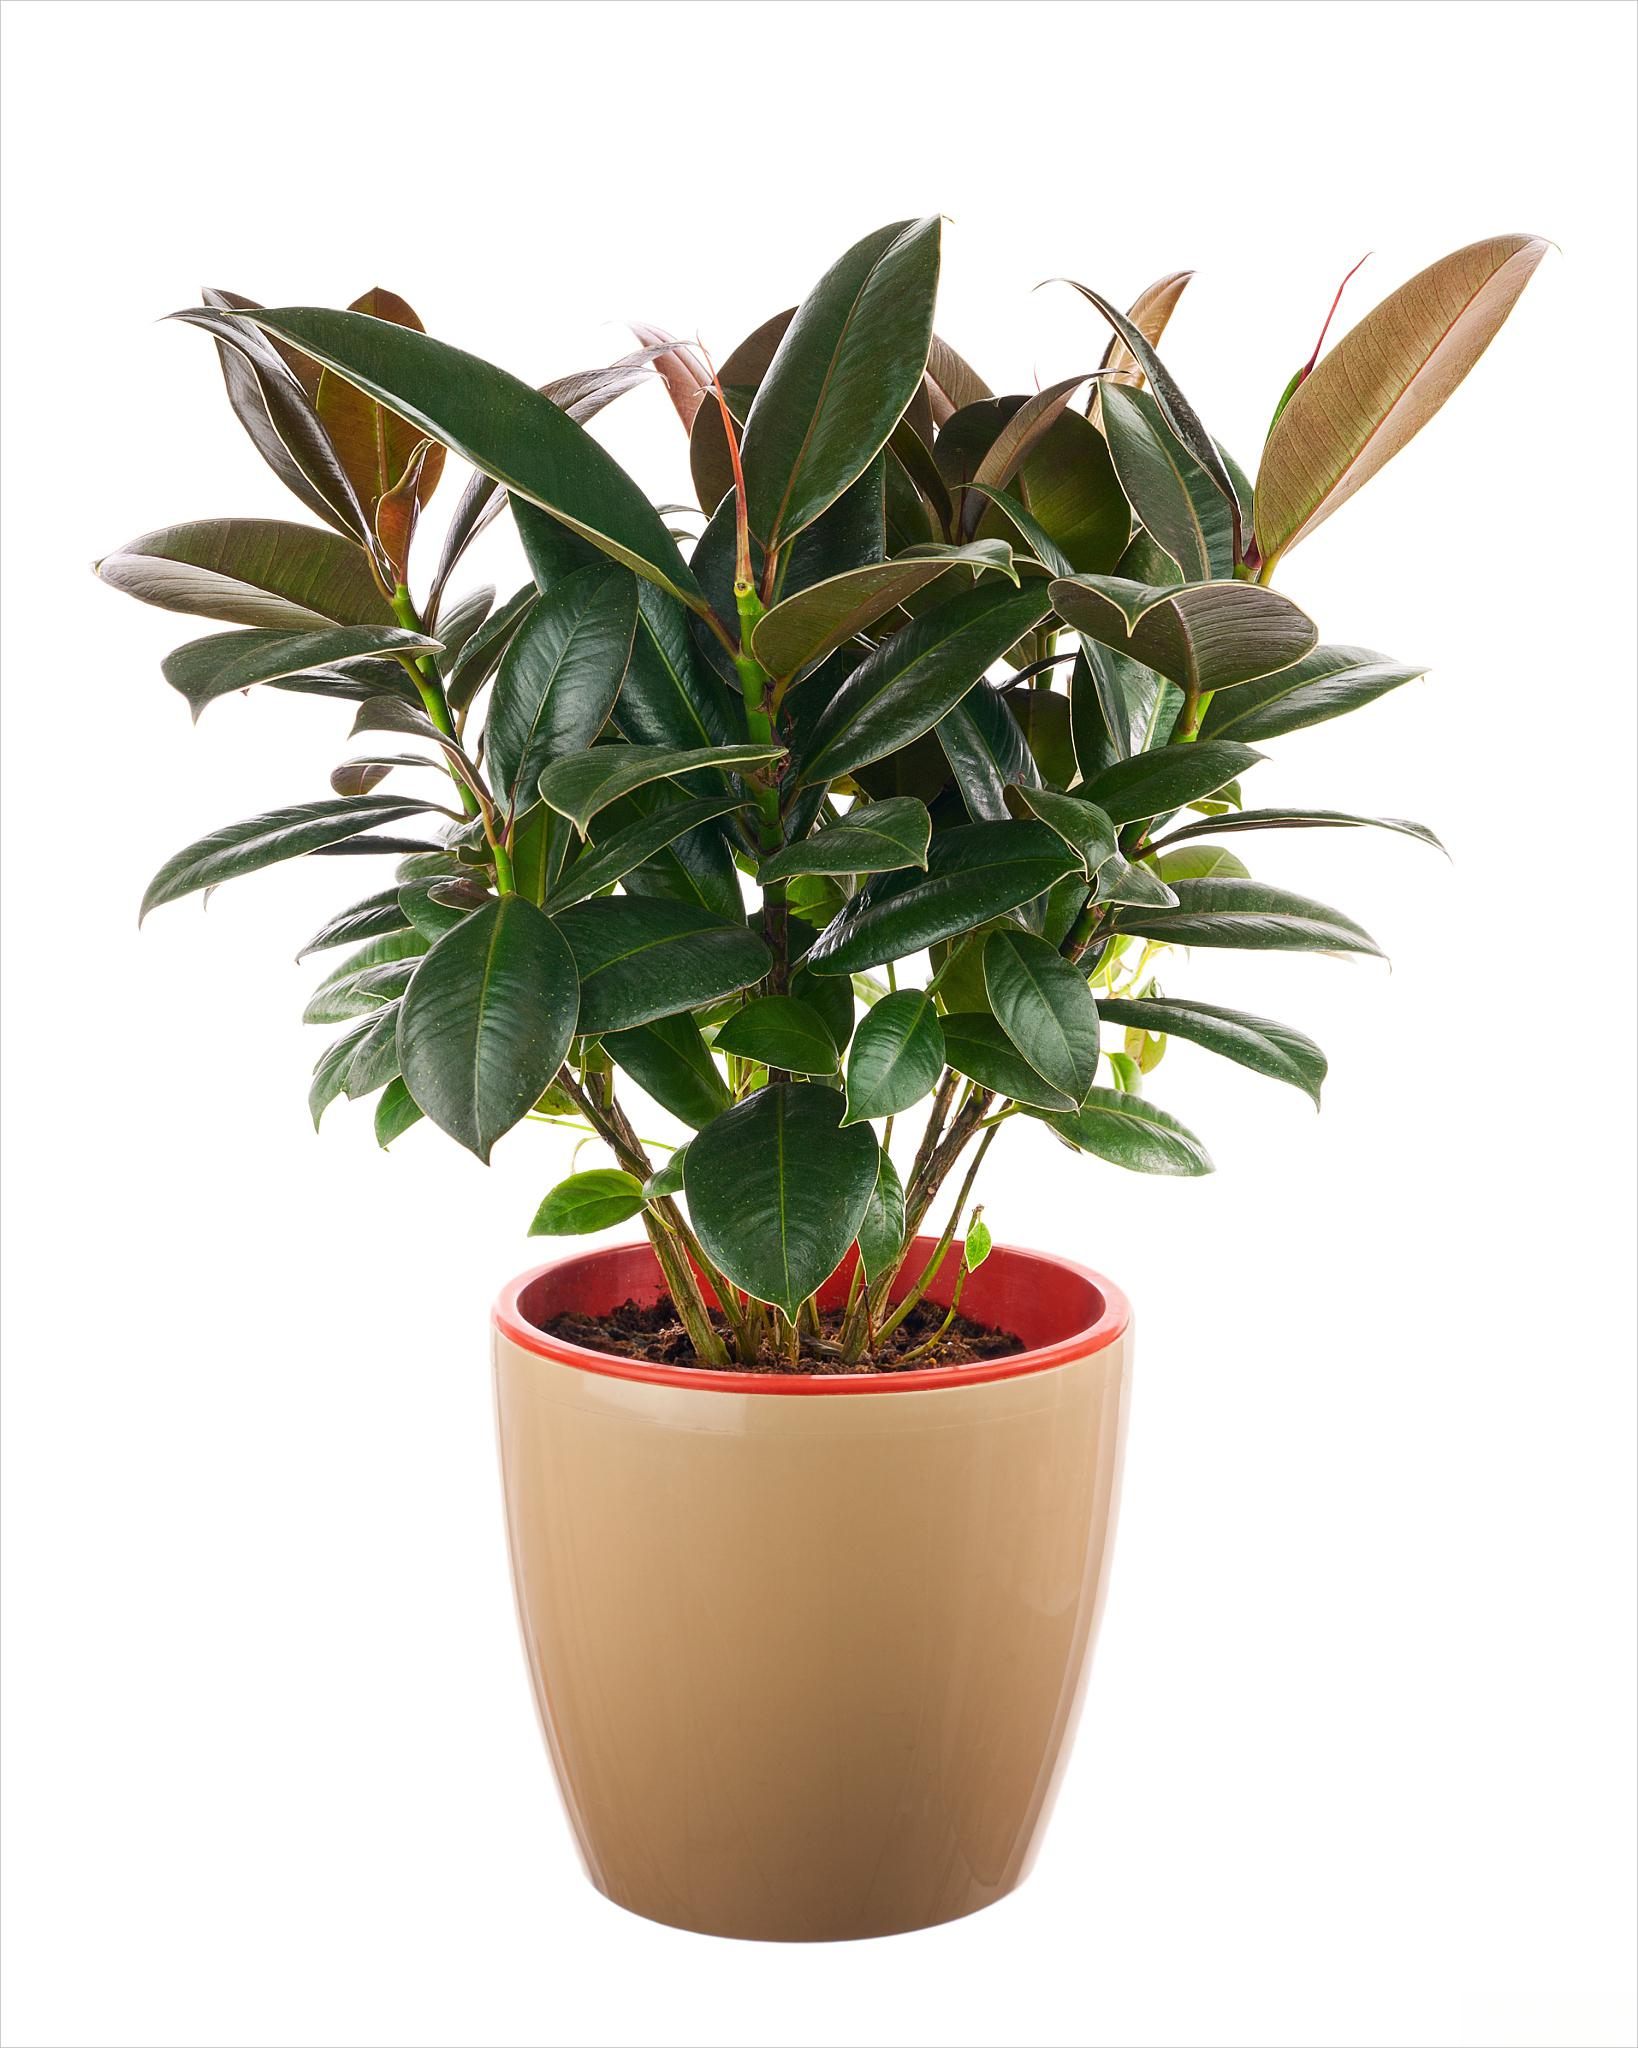 橡皮树养护指南 橡皮树是一种常见的室内盆栽植物,以下是一些养护建议